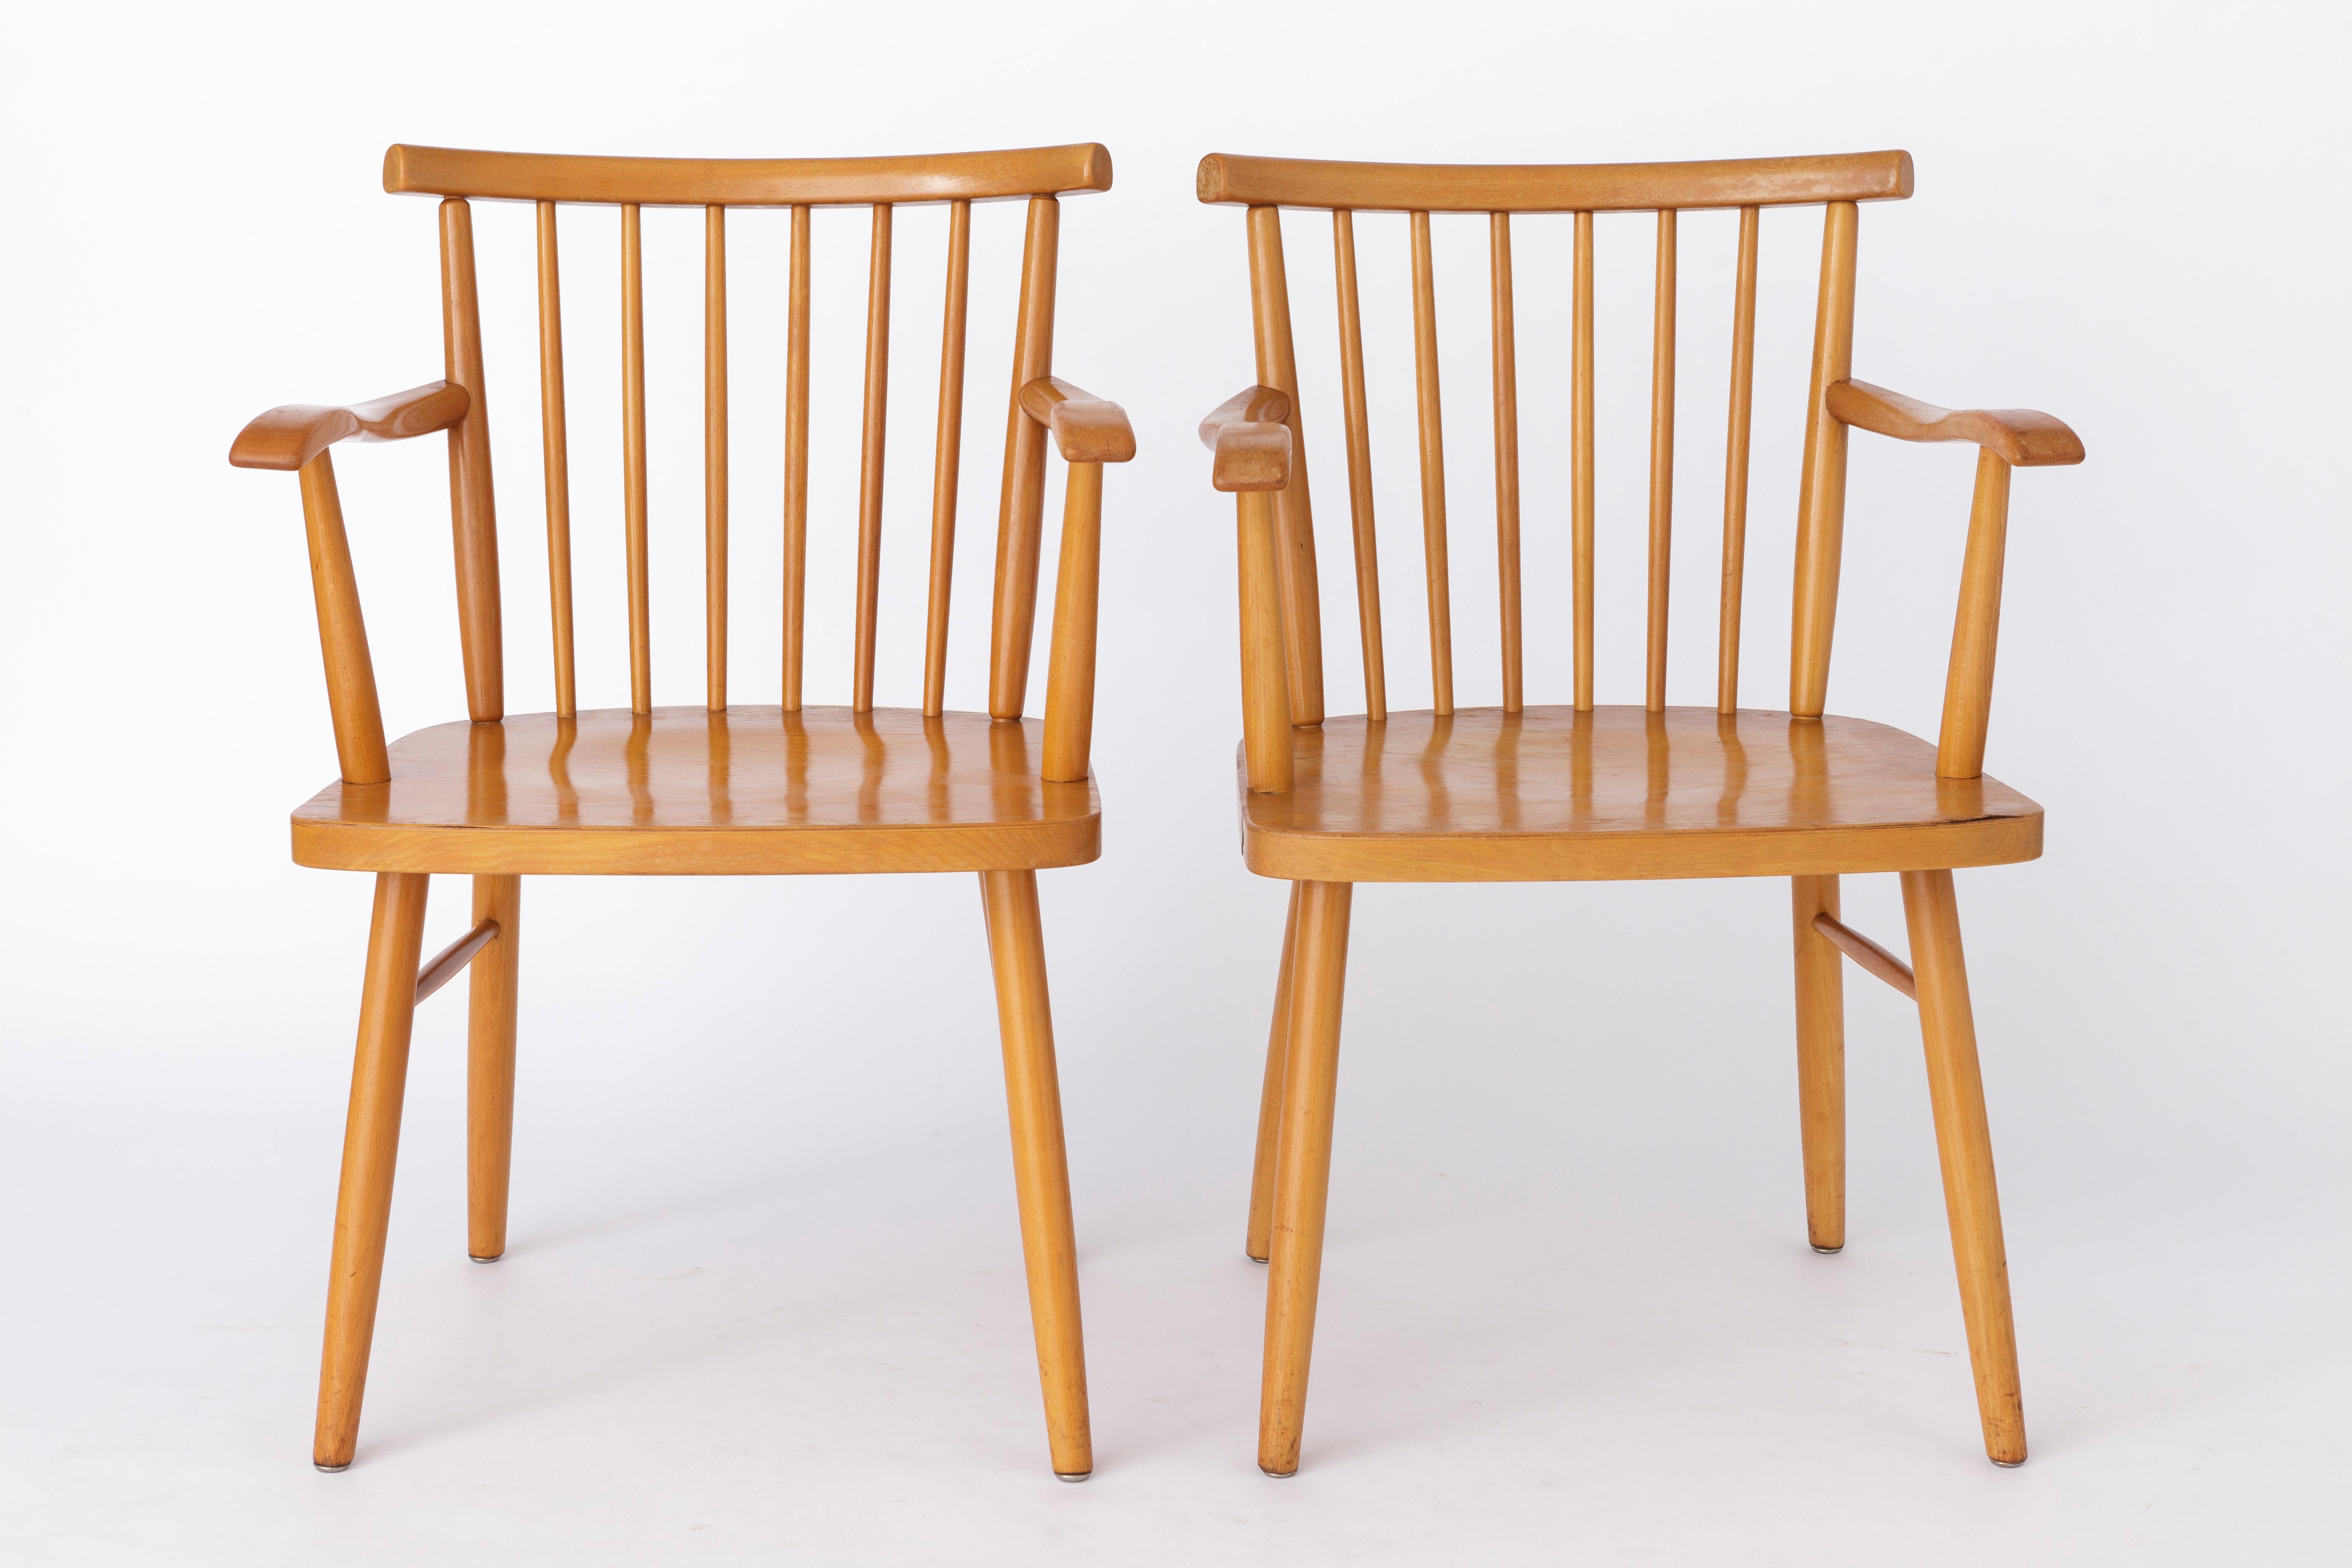 2 Vintage Sessel vom deutschen Hersteller Lübke. 
Produktionszeitraum: 1950s. 
Der angezeigte Preis gilt für 2 Stühle. Insgesamt bis zu 3 Stühle + Bank verfügbar. 

Stabiler Rahmen aus Buchenholz. Aufgearbeitet und geölt. 
Herstellerstempel unter